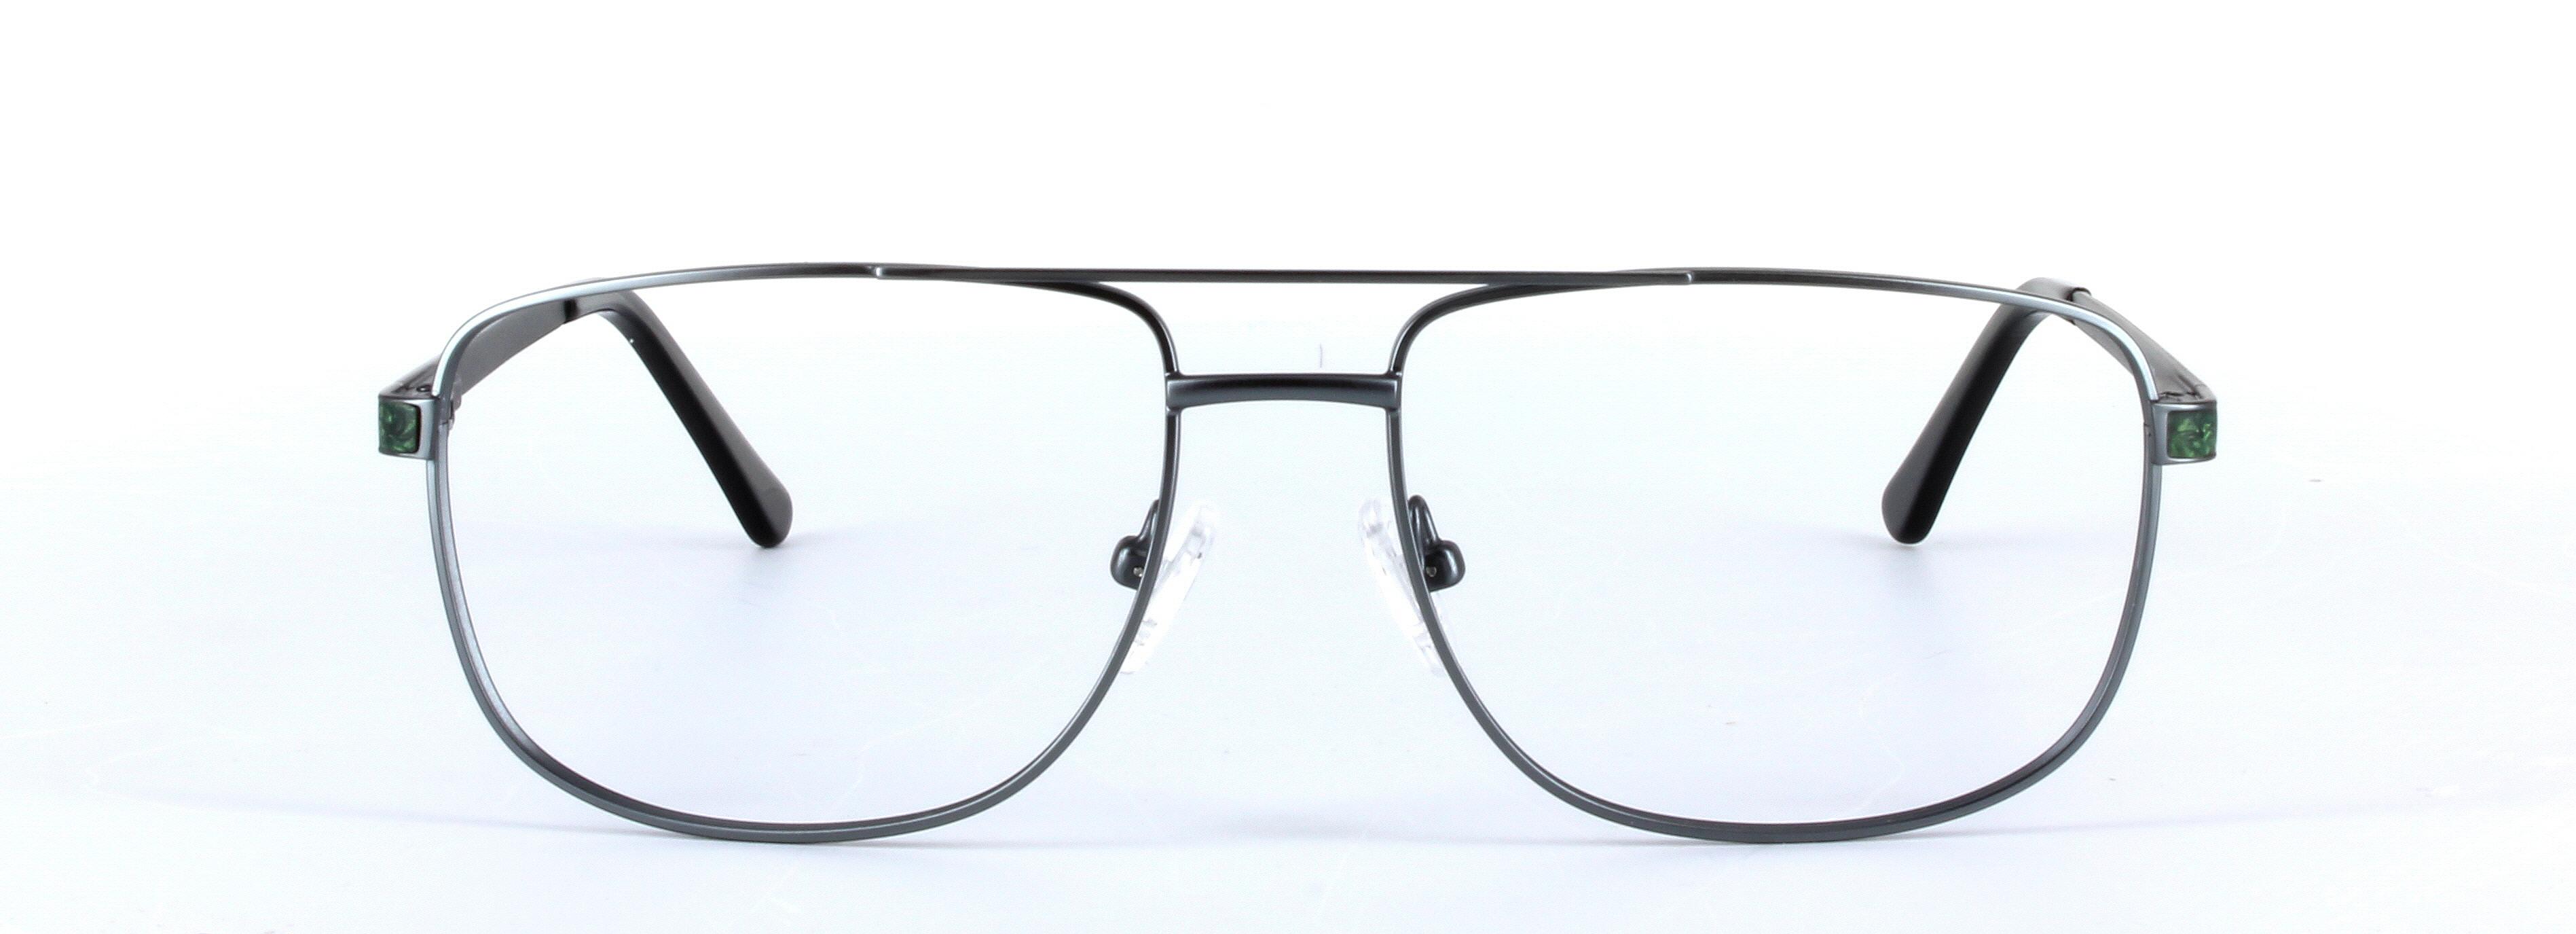 Marlowe Gunmetal Full Rim Oval Metal Glasses - Image View 5